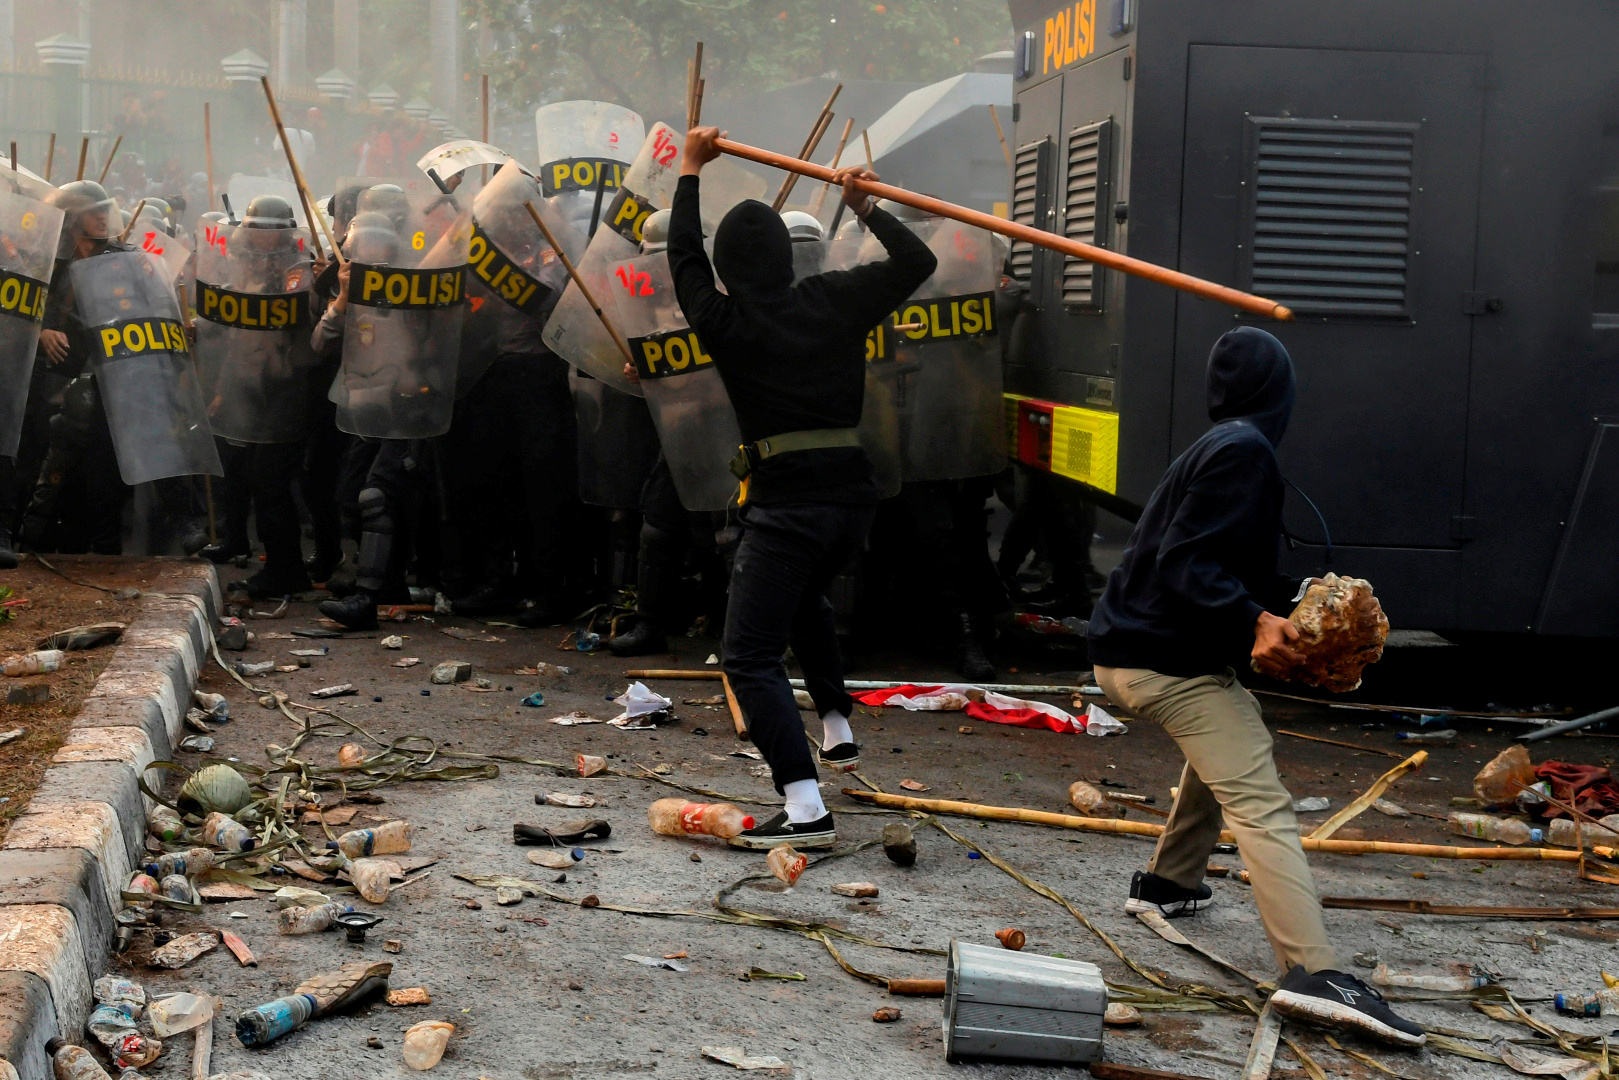 示威民众不断朝警方丢掷棍棒、玻璃物品，并在道路中央焚烧杂物，与警方爆发激烈冲突。